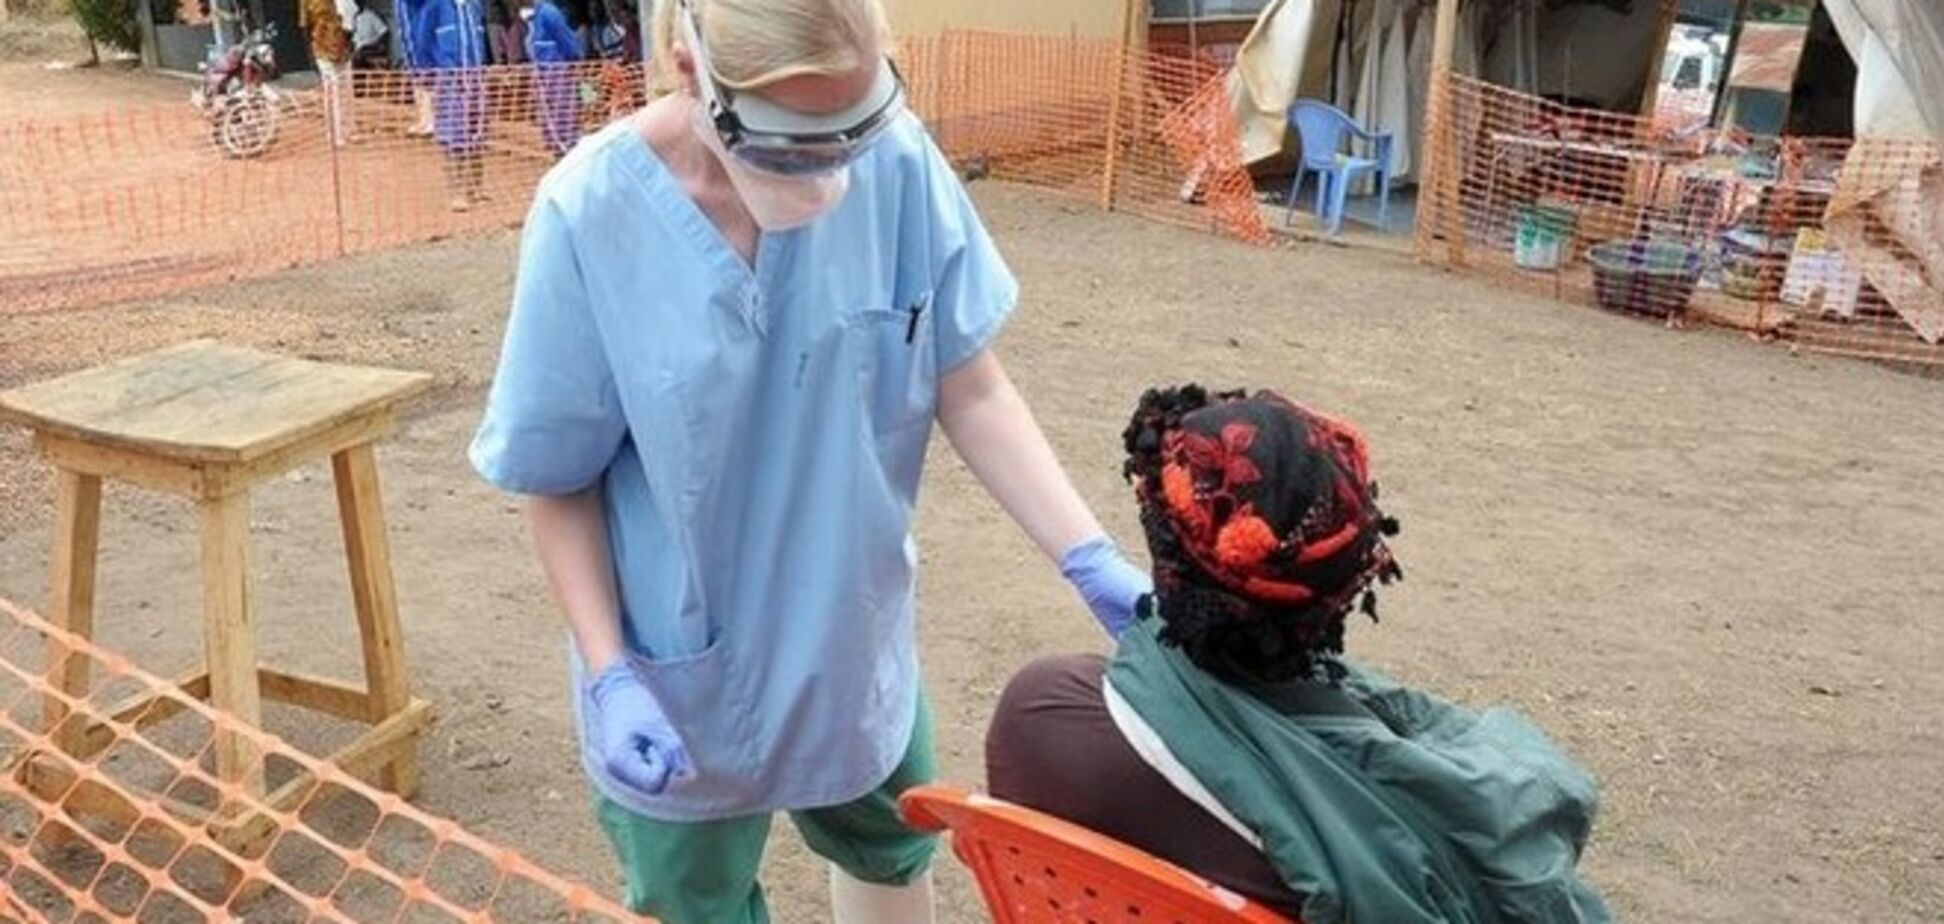 10 фактов про вирус Эбола, которые стоит знать каждому